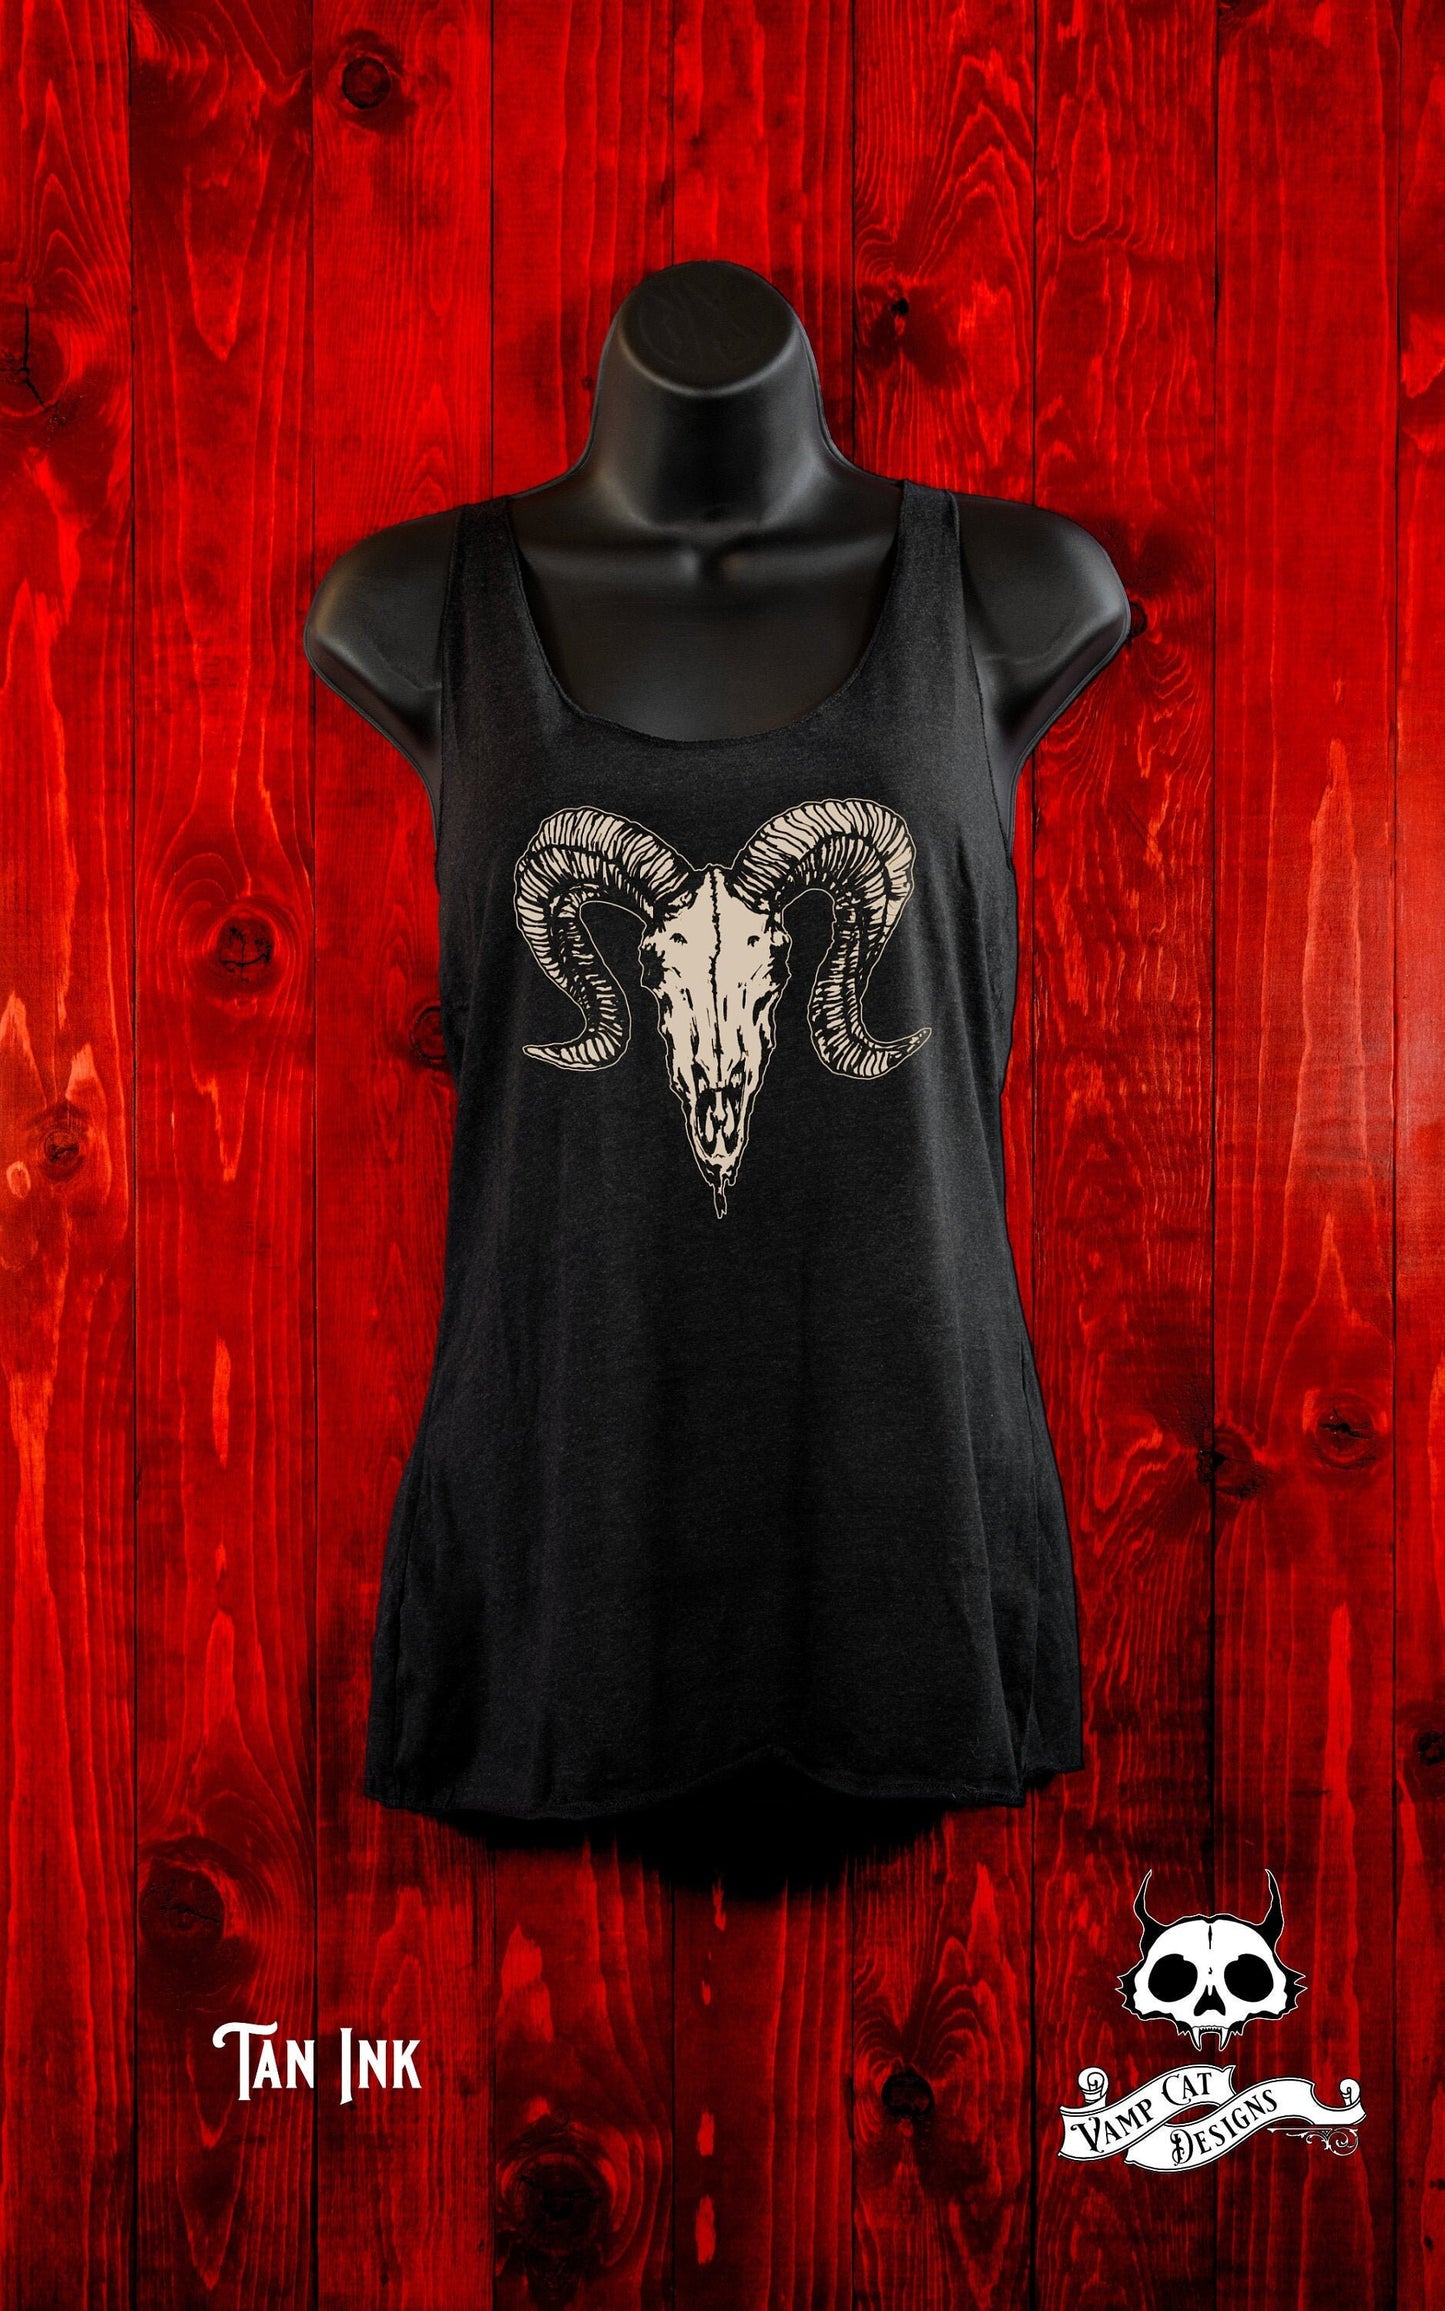 Dark Ram Skull-Tank Top-Gifts For Her-Dark Apparel-Illustration- Art T-shirt-Animal Skull-Ram Skull-Silkscreen art-Occult Gifts-Dark Fashion